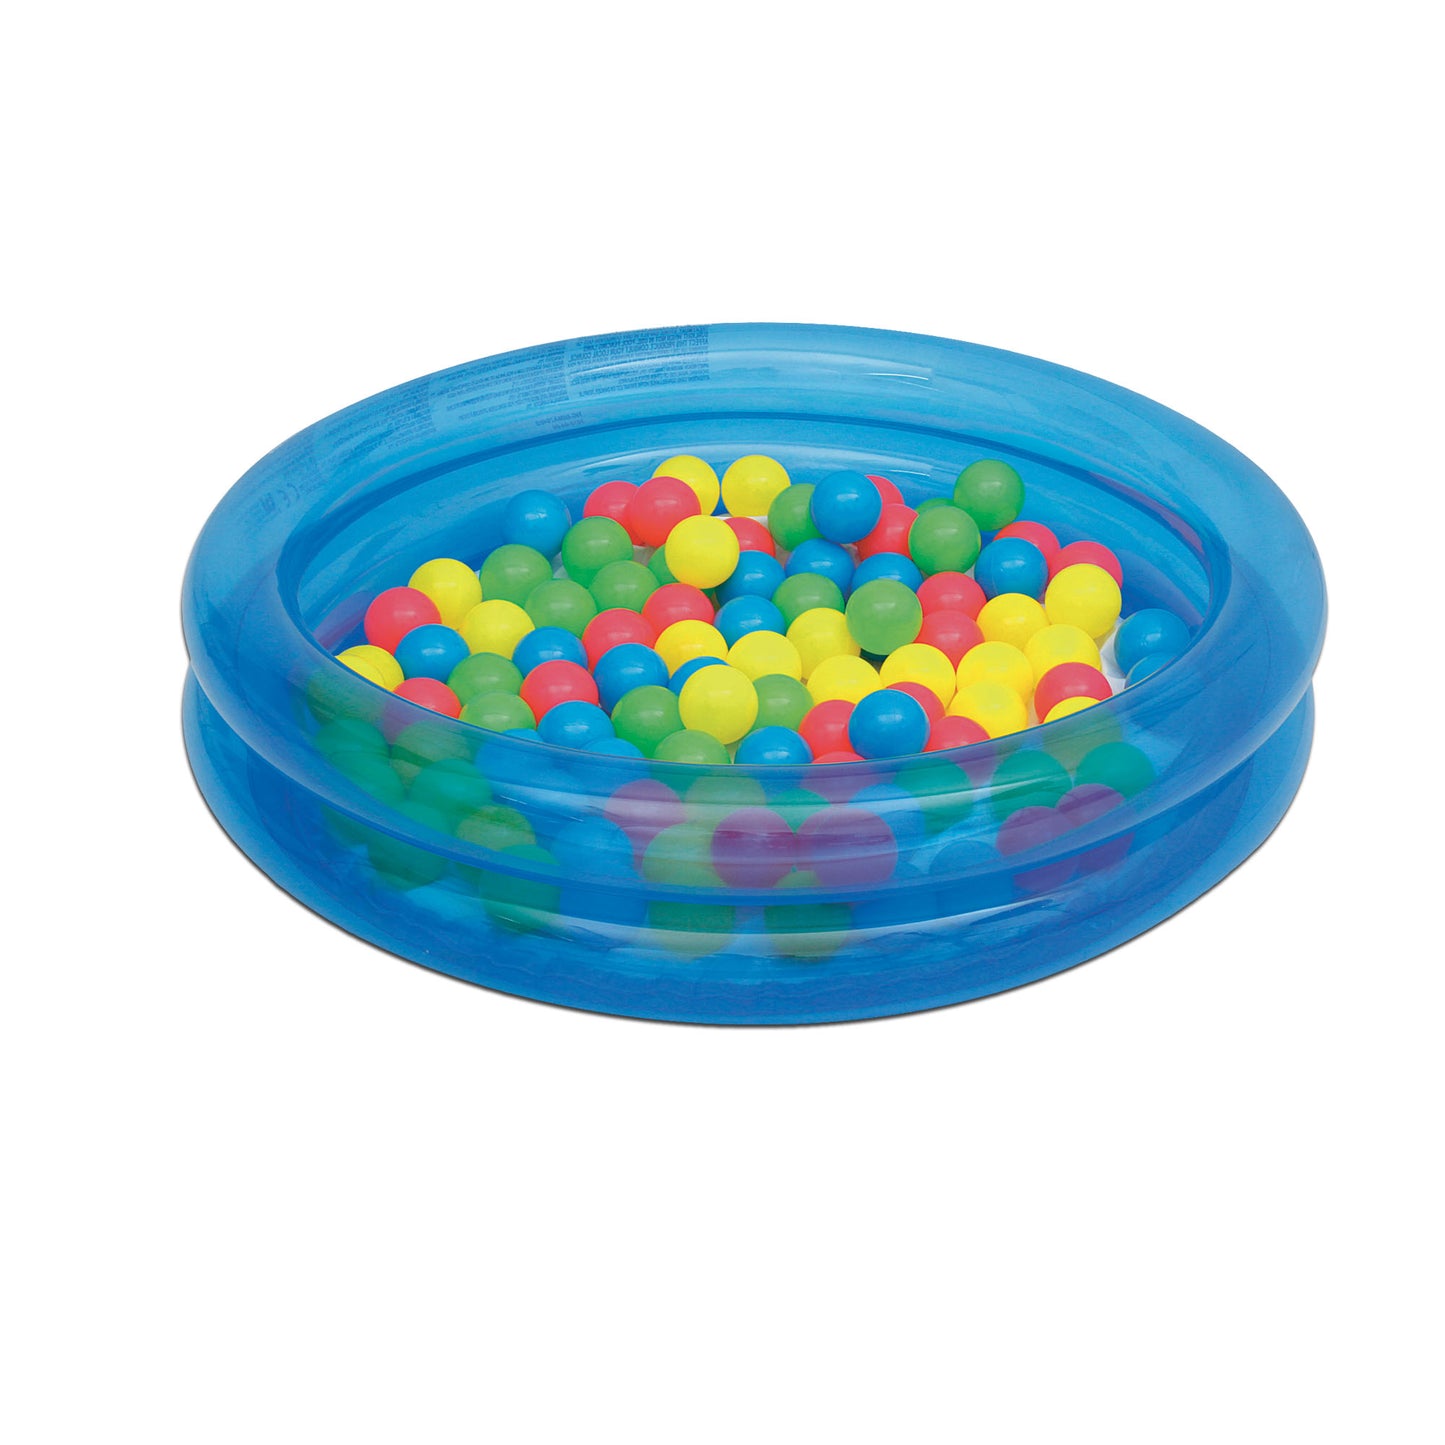 Inflatable 2-Ring Kiddie Wading Pool Ball Pit Pink or Blue w/ 50 Fun Game Balls